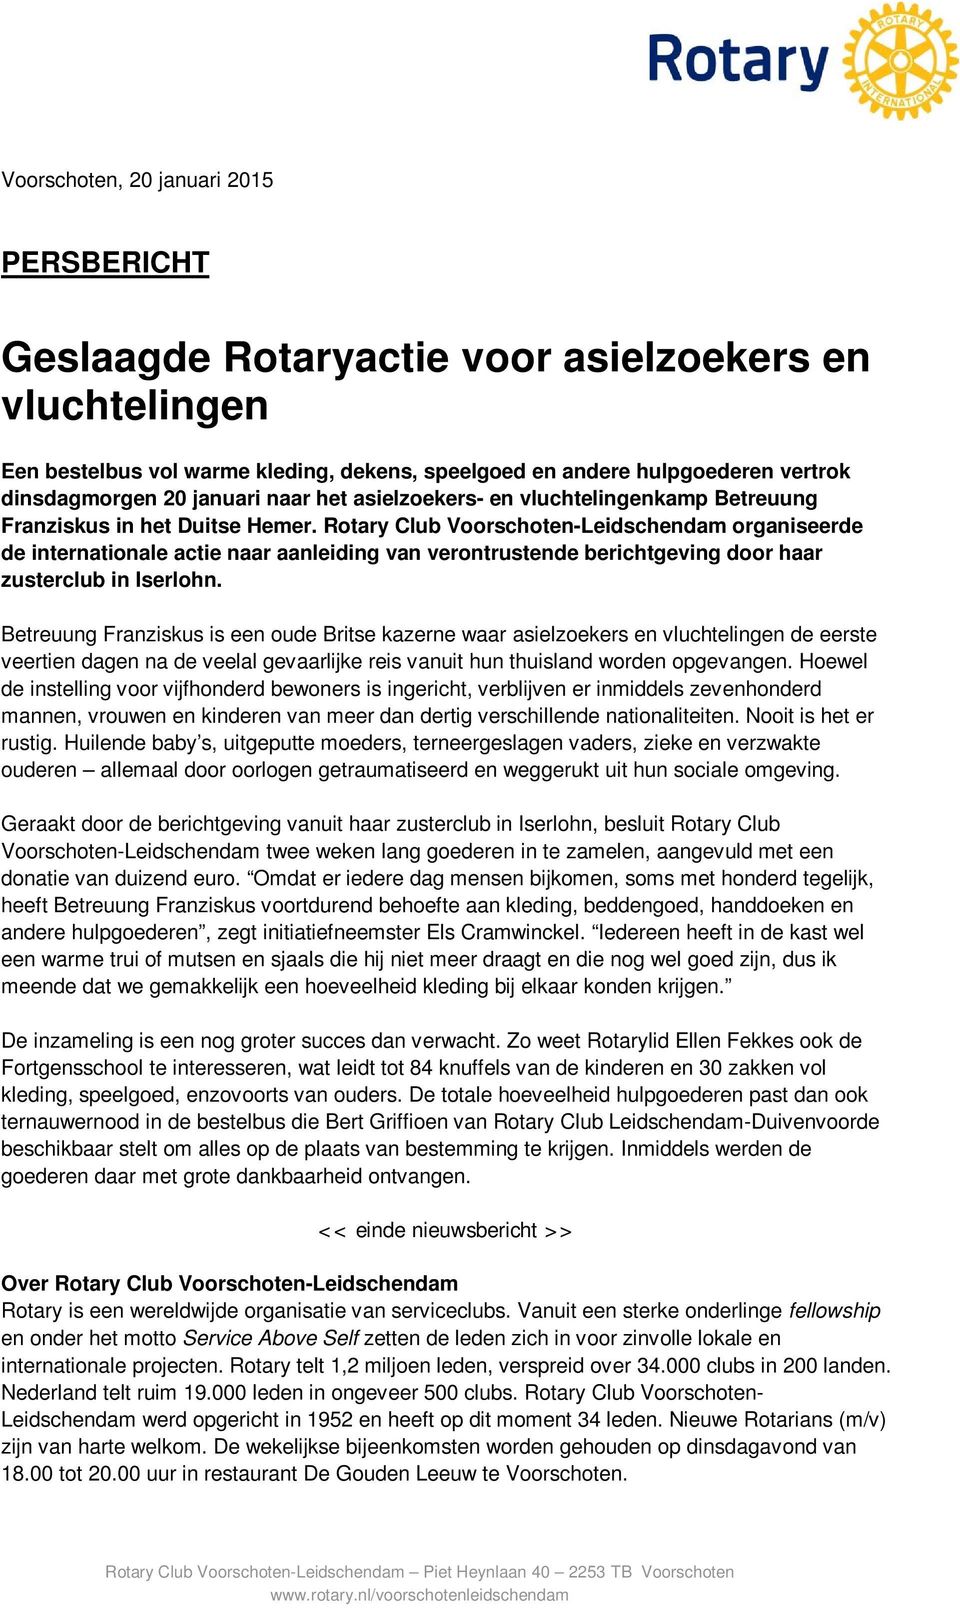 Rotary Club Voorschoten-Leidschendam organiseerde de internationale actie naar aanleiding van verontrustende berichtgeving door haar zusterclub in Iserlohn.